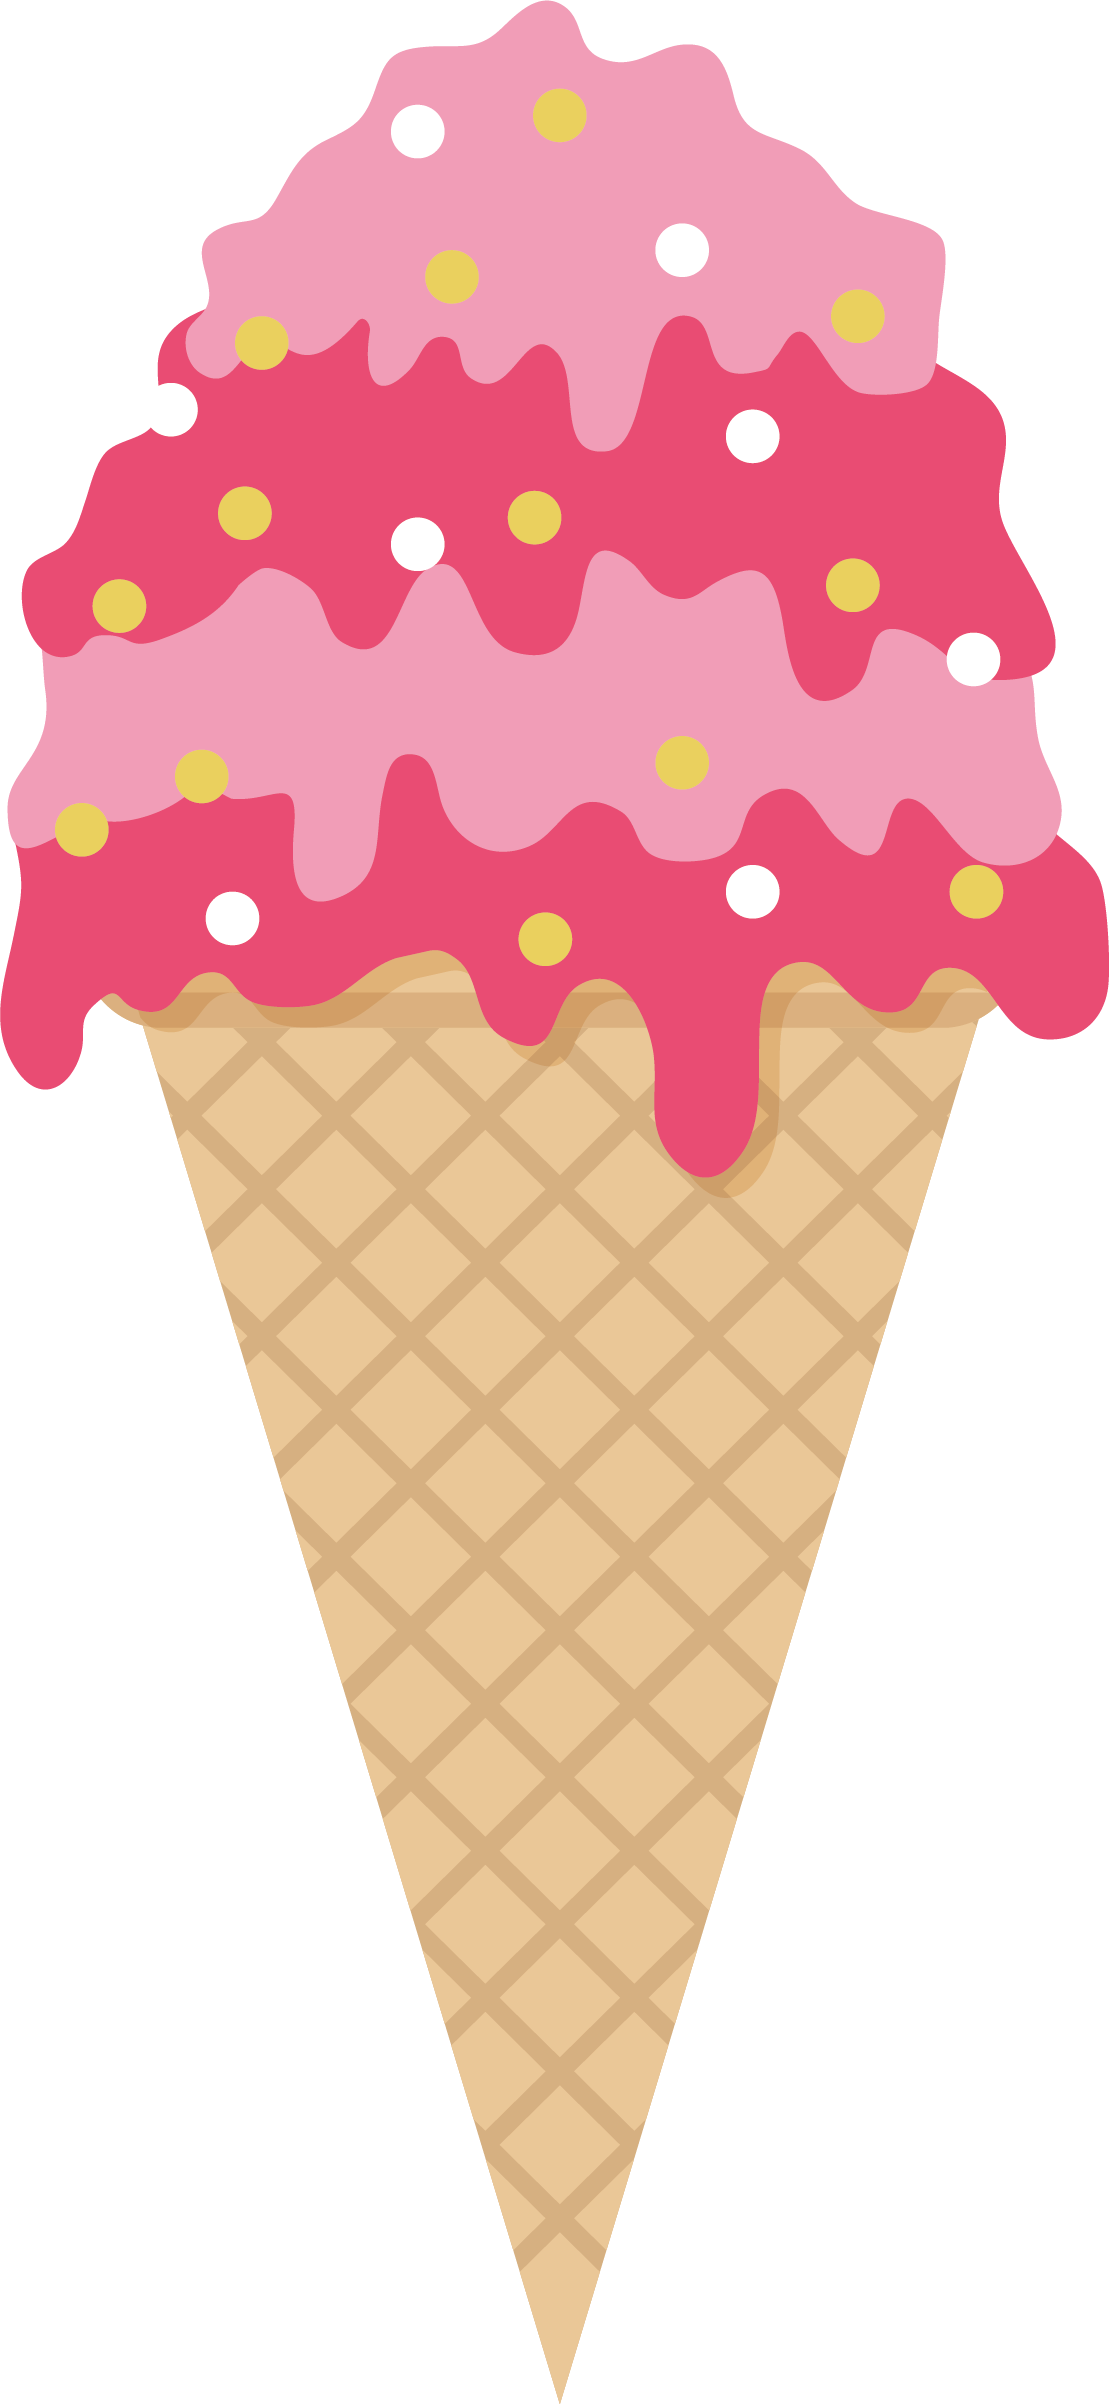 Ice Cream Cone Strawberry Ice Cream Sundae - Ice Cream (1109x2404)